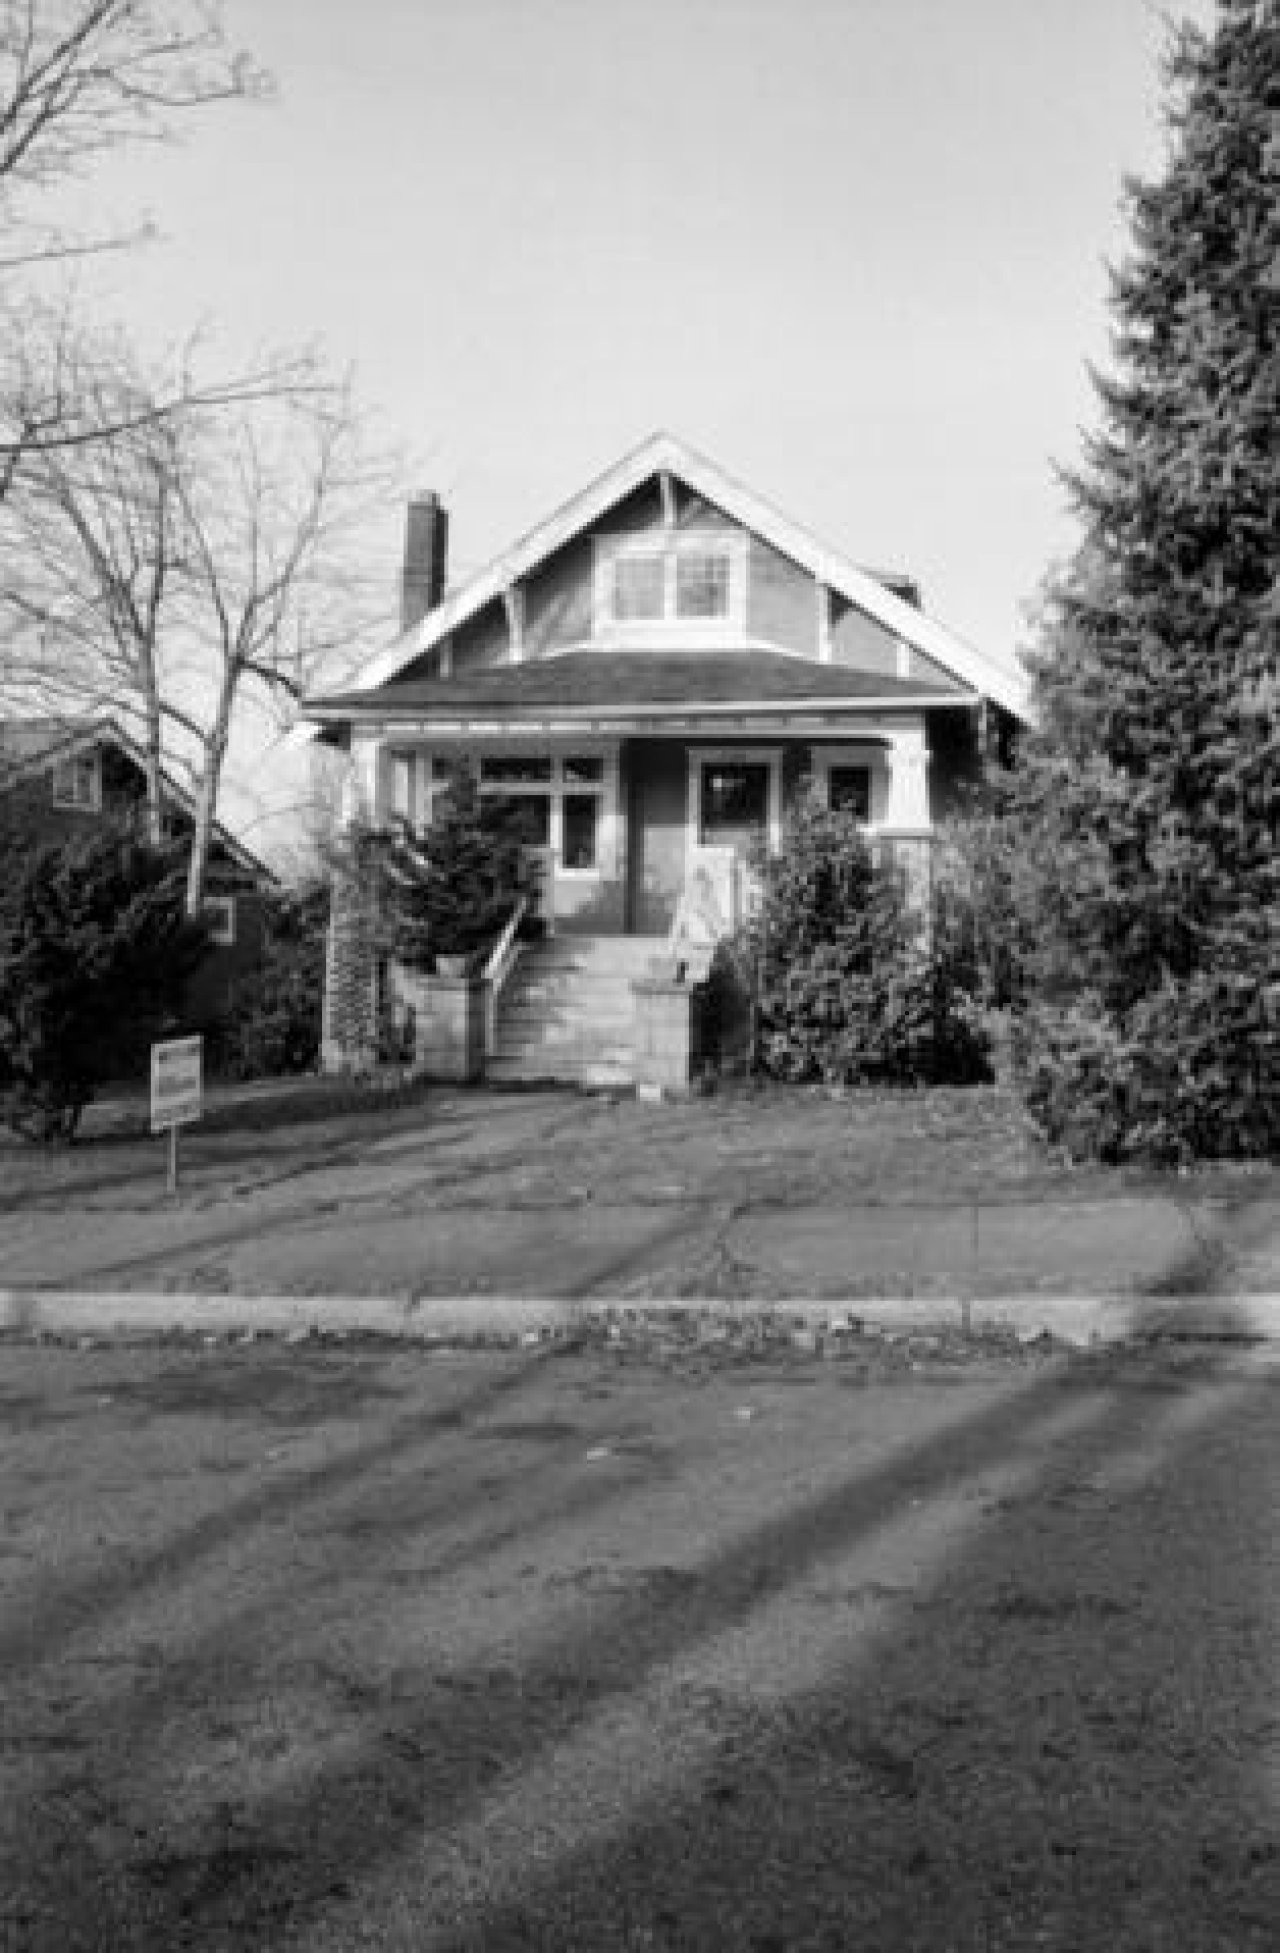 2745 West 1st Avenue c. 1985
Source: City of Vancouver Archives Item : CVA 790-1471 - 2745 West 1st Avenue